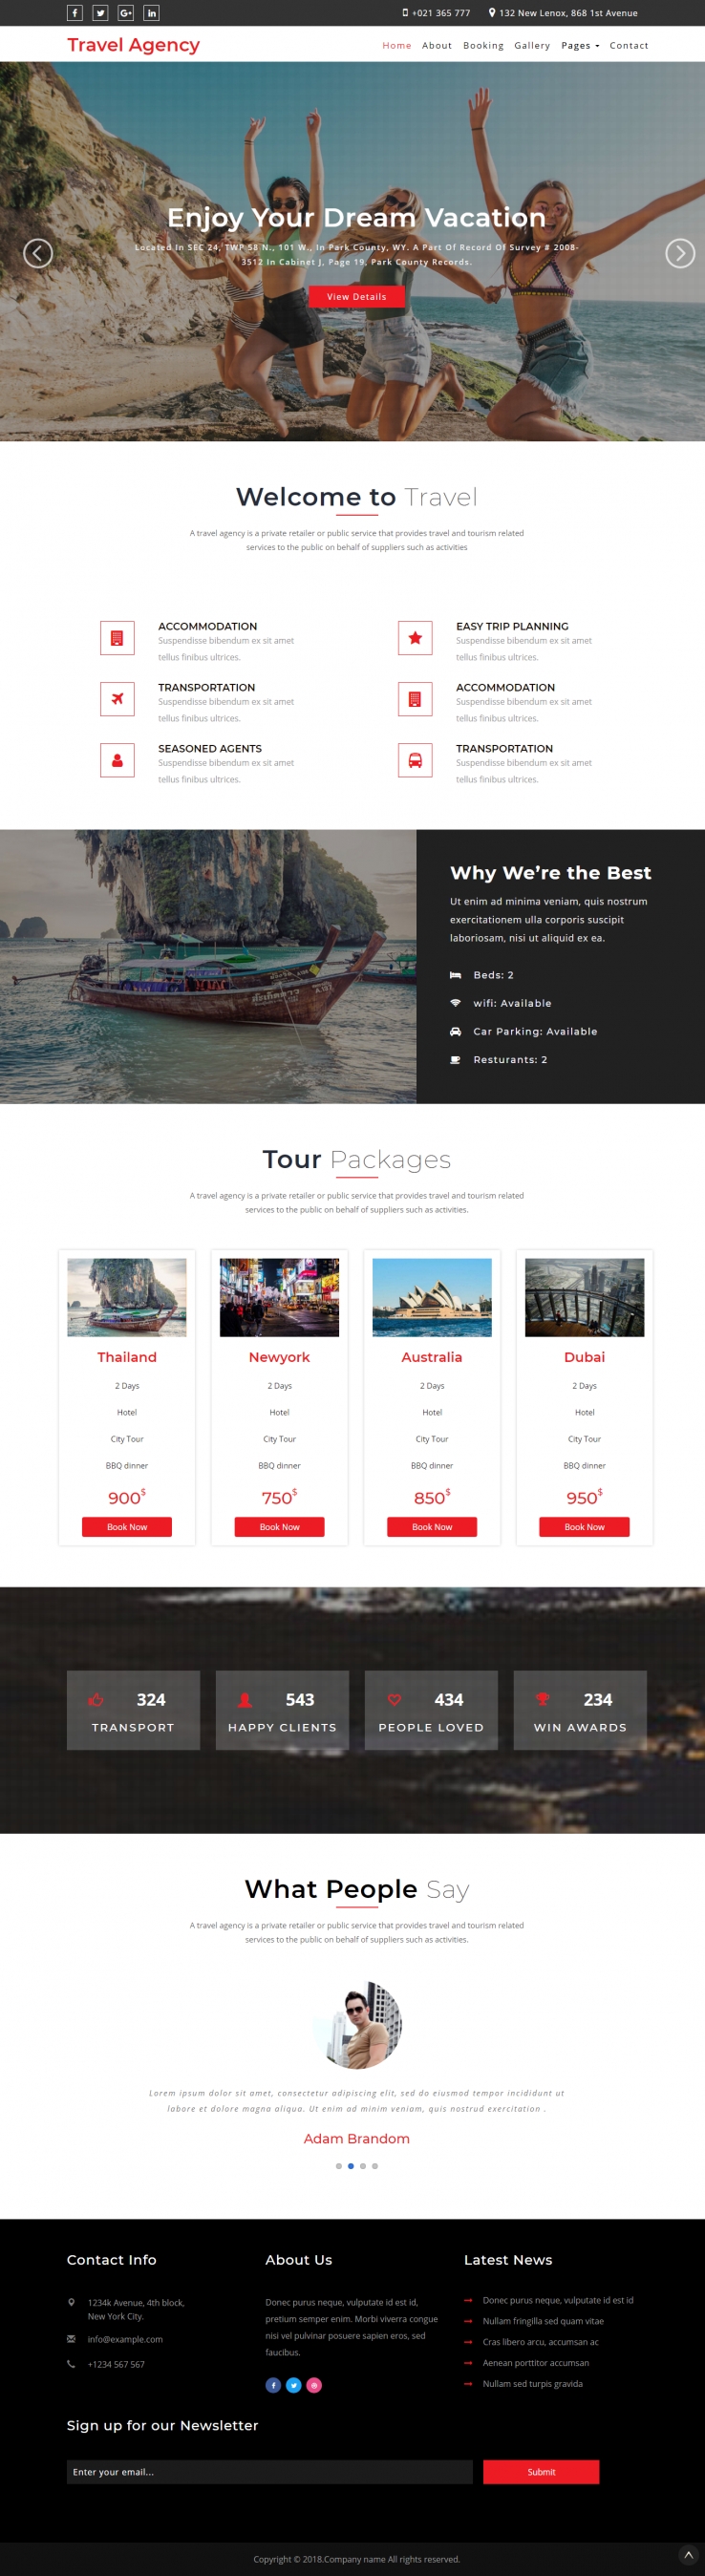 红色欧美风格的旅行社服务企业网站源码下载